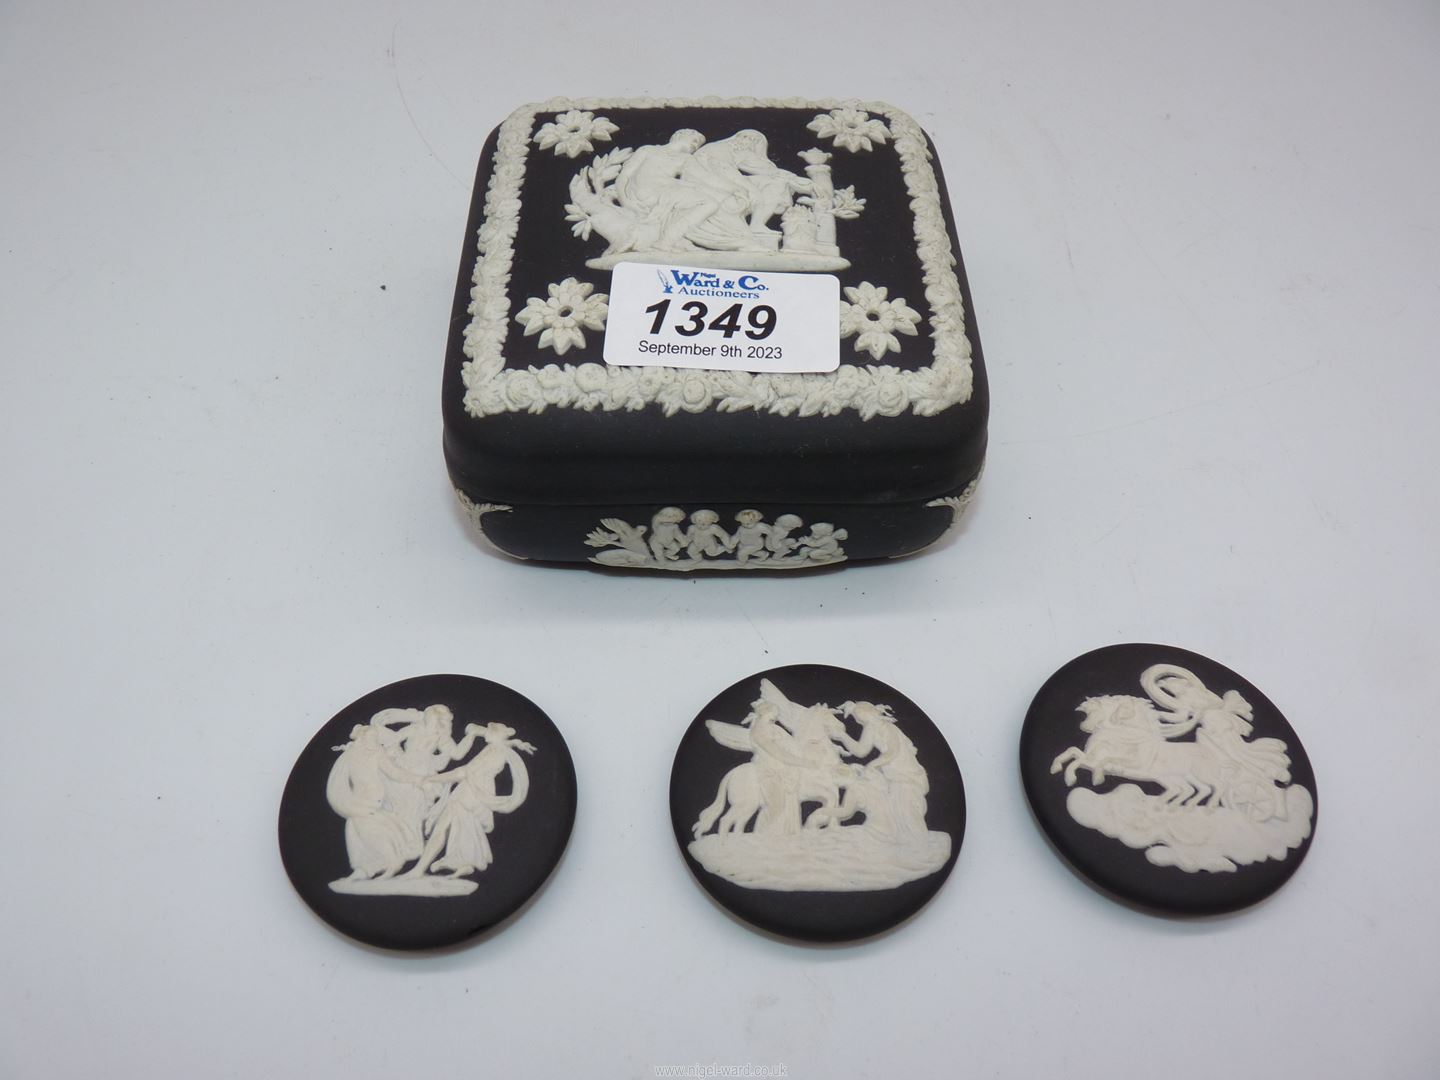 A Wedgwood black and white Jasperware box and cover,